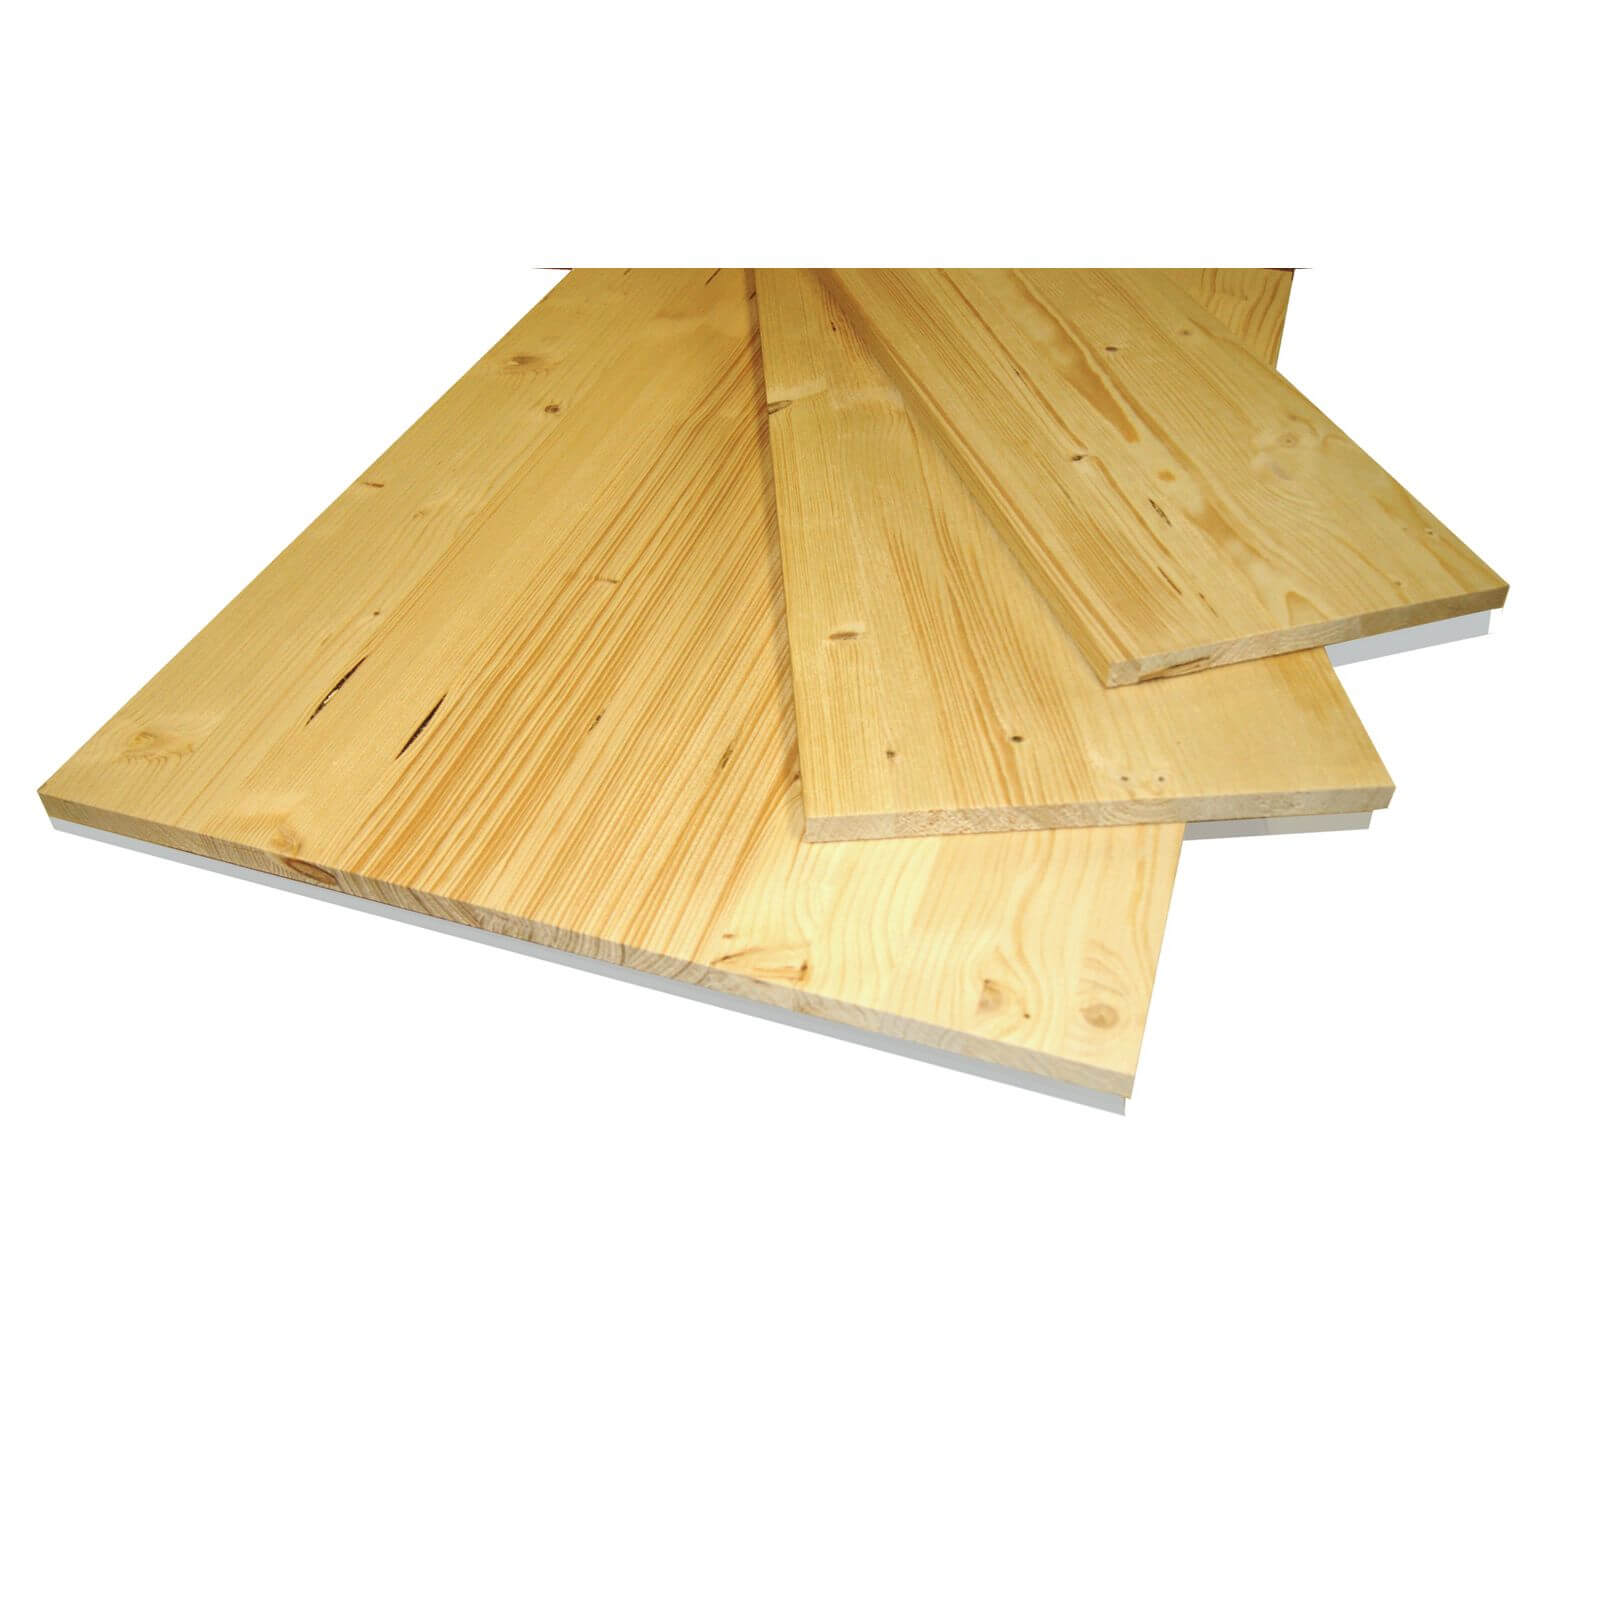 Metsa Wood Solid Spruce Wooden Panel Board 1.15m (18 x 400 x 1150mm)